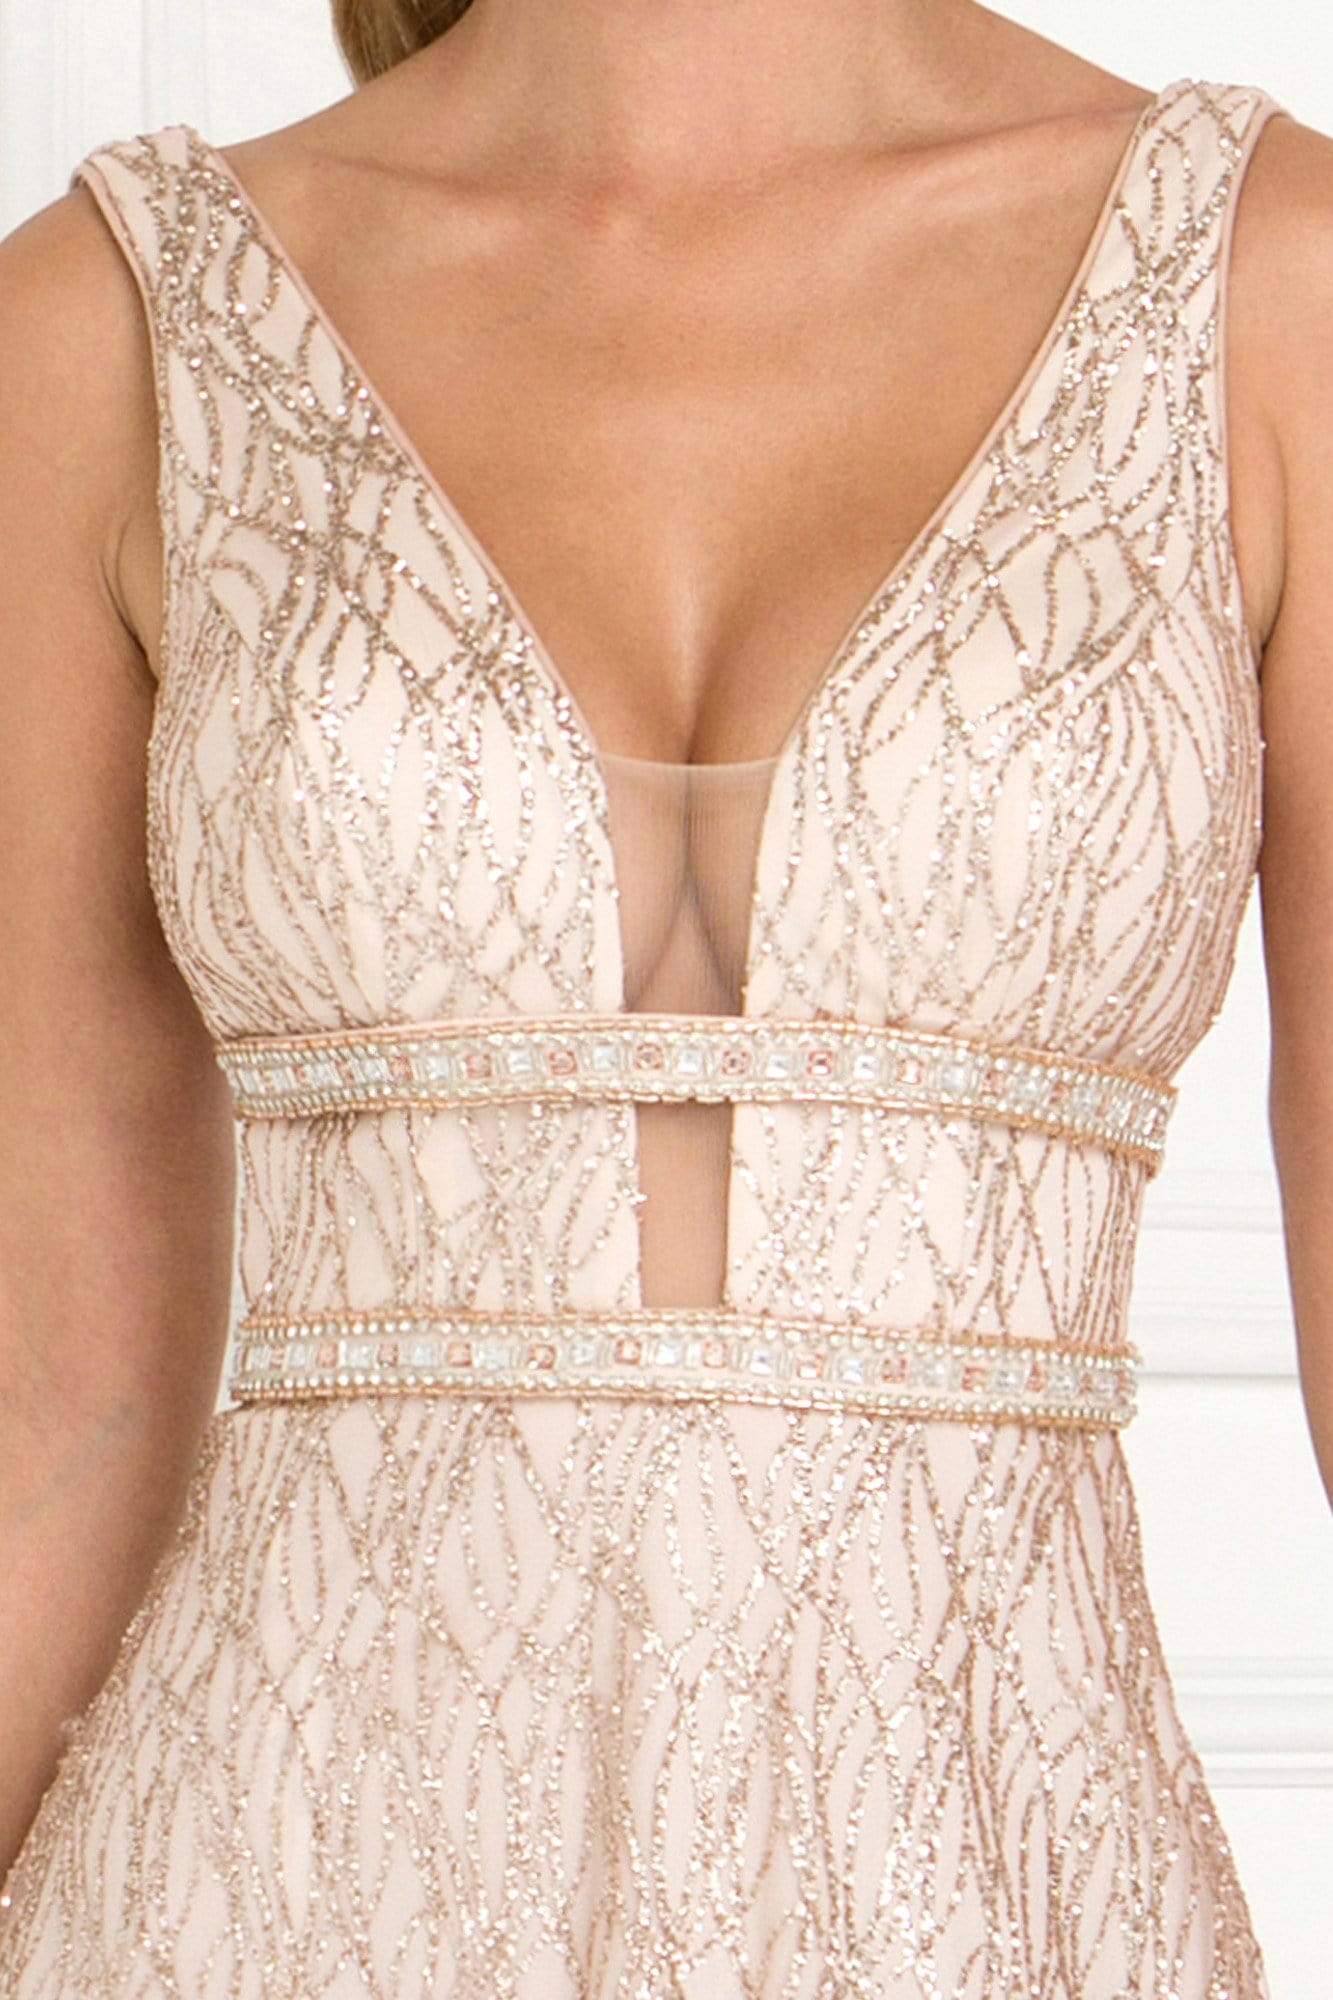 Elizabeth K - GL1575 Sequined Deep V-neck Organza A-line Dress Evening Dresses